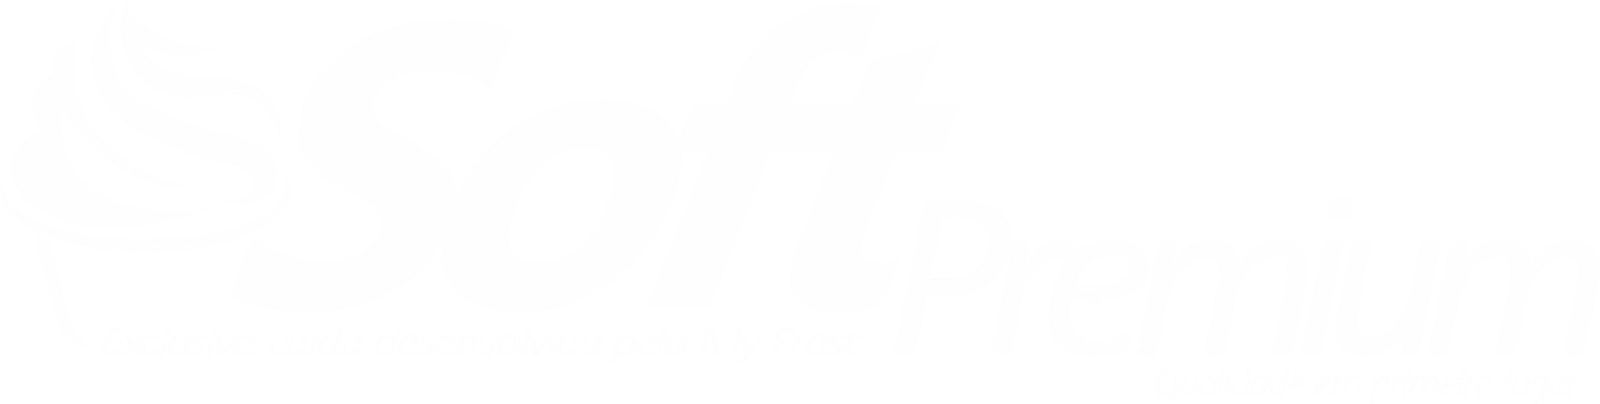 Caldas Pronta Soft Premium My Frost